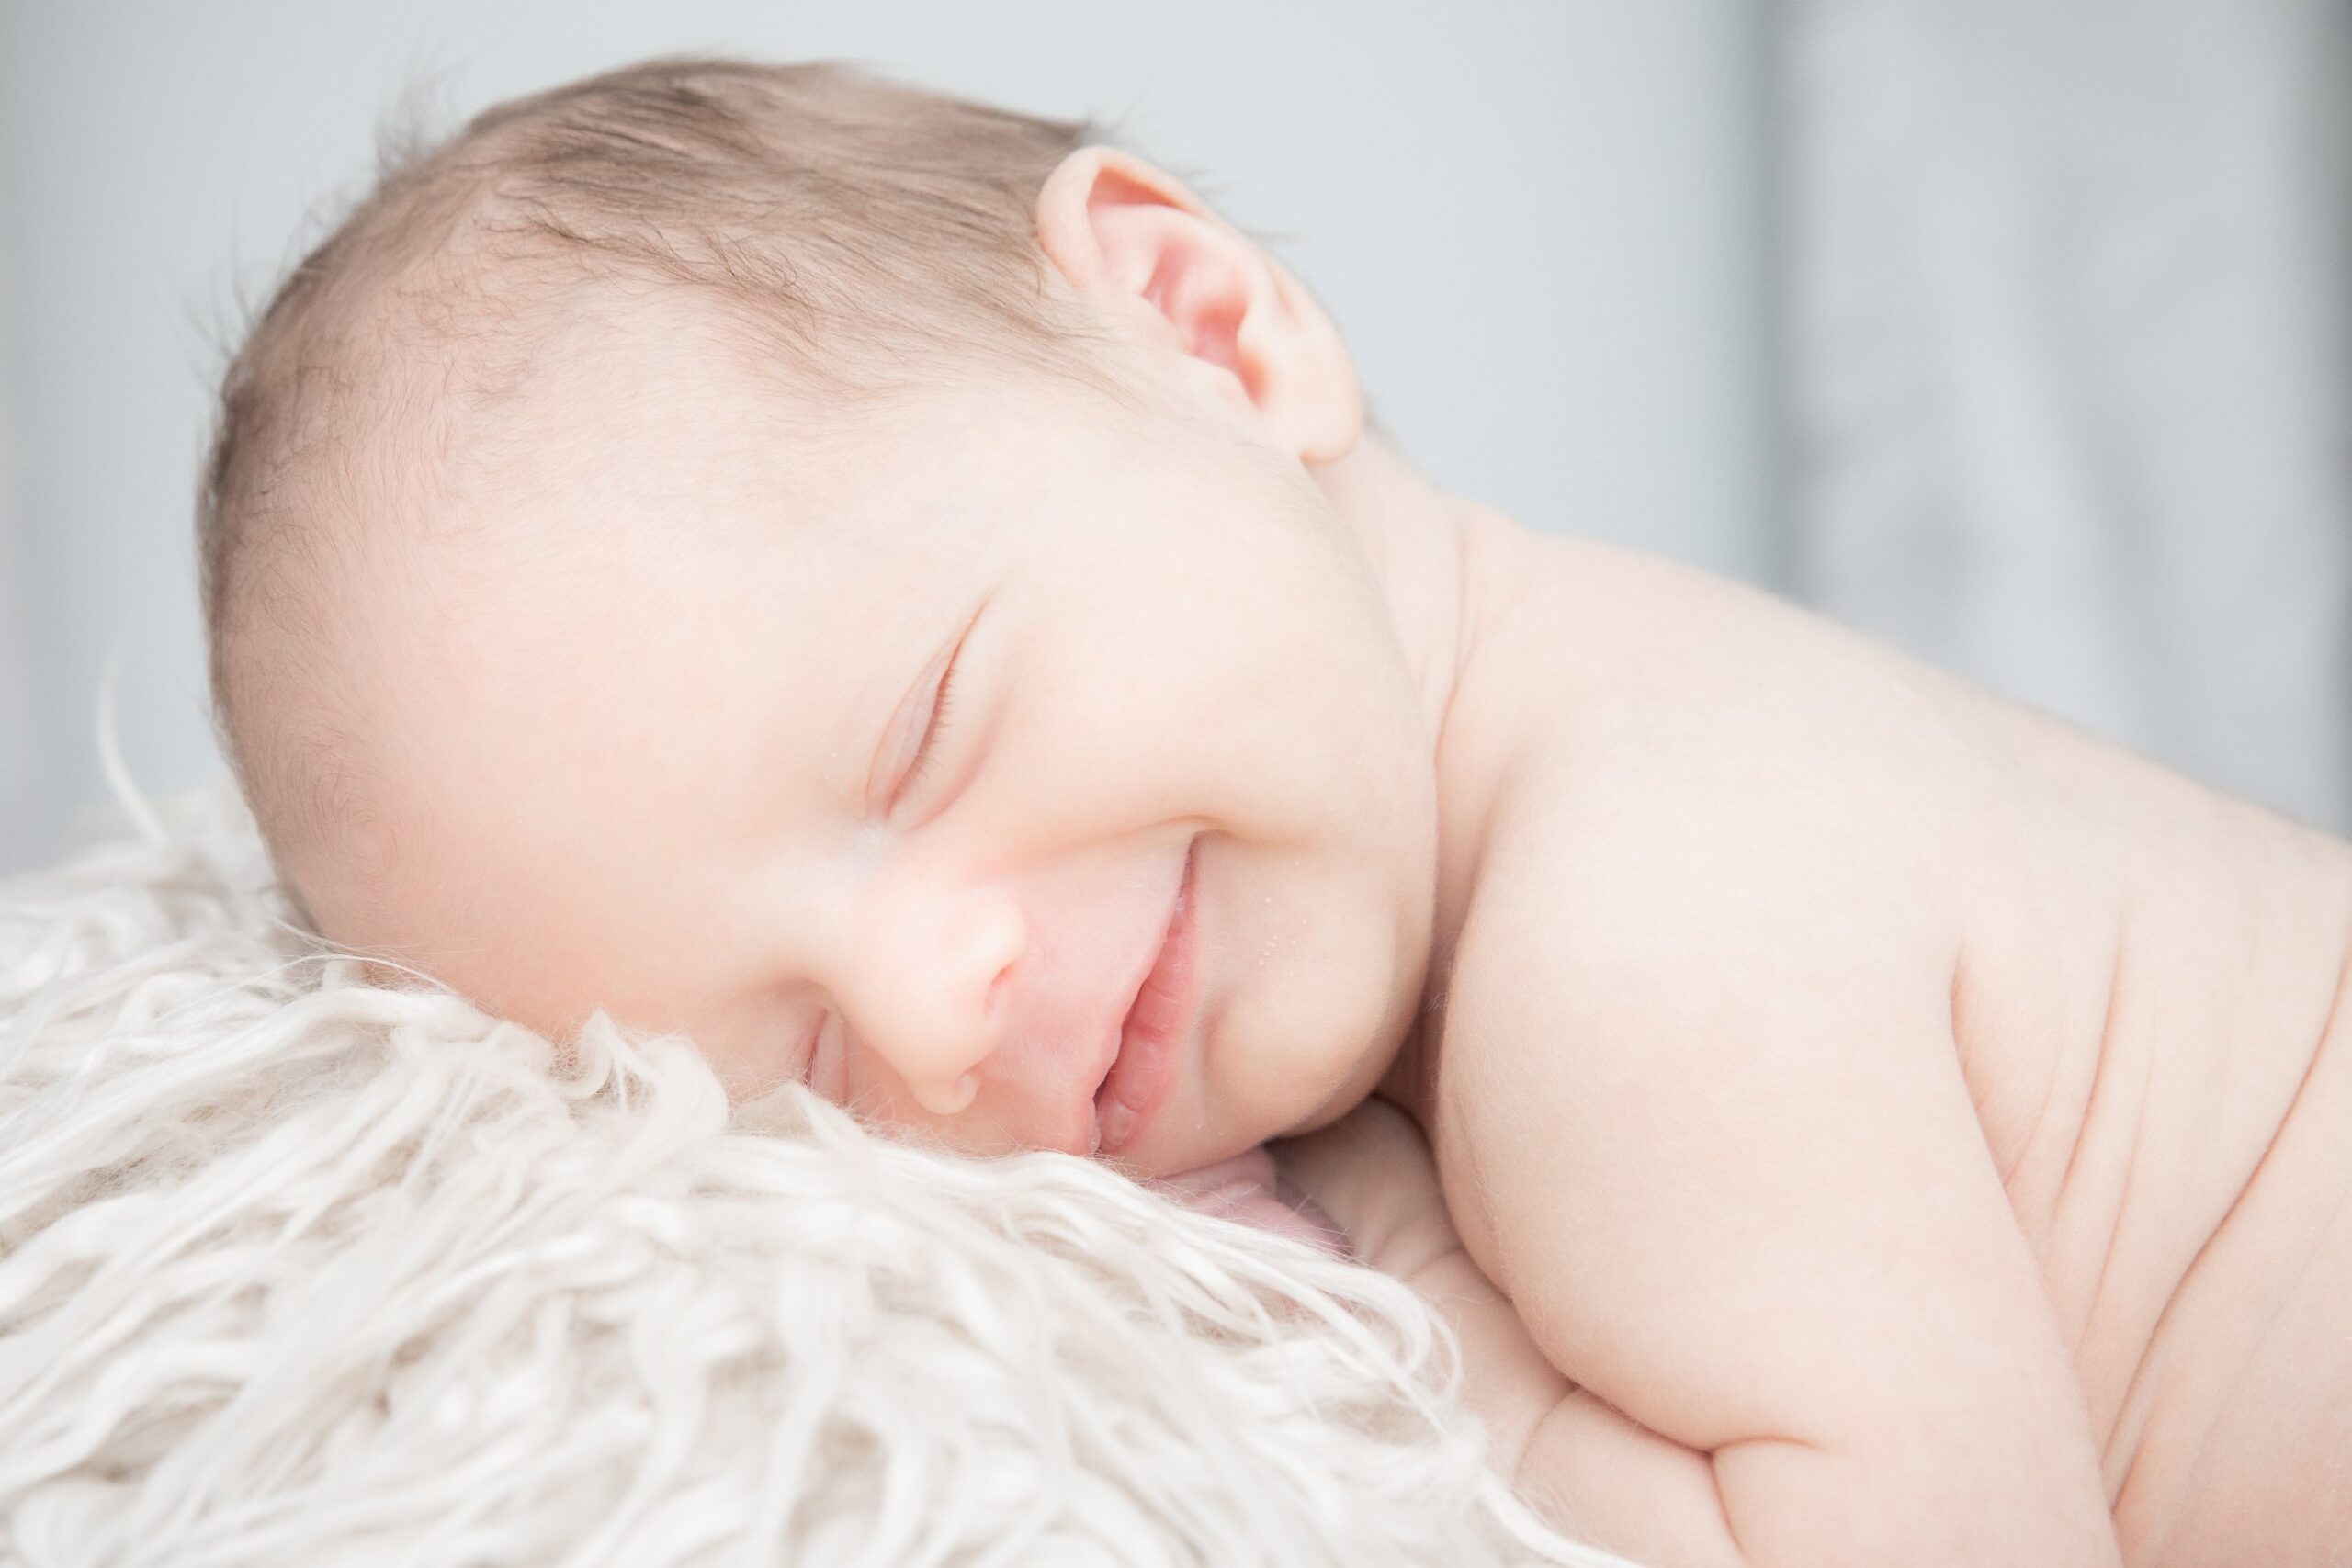 newborn smiling during newborn photoshoot